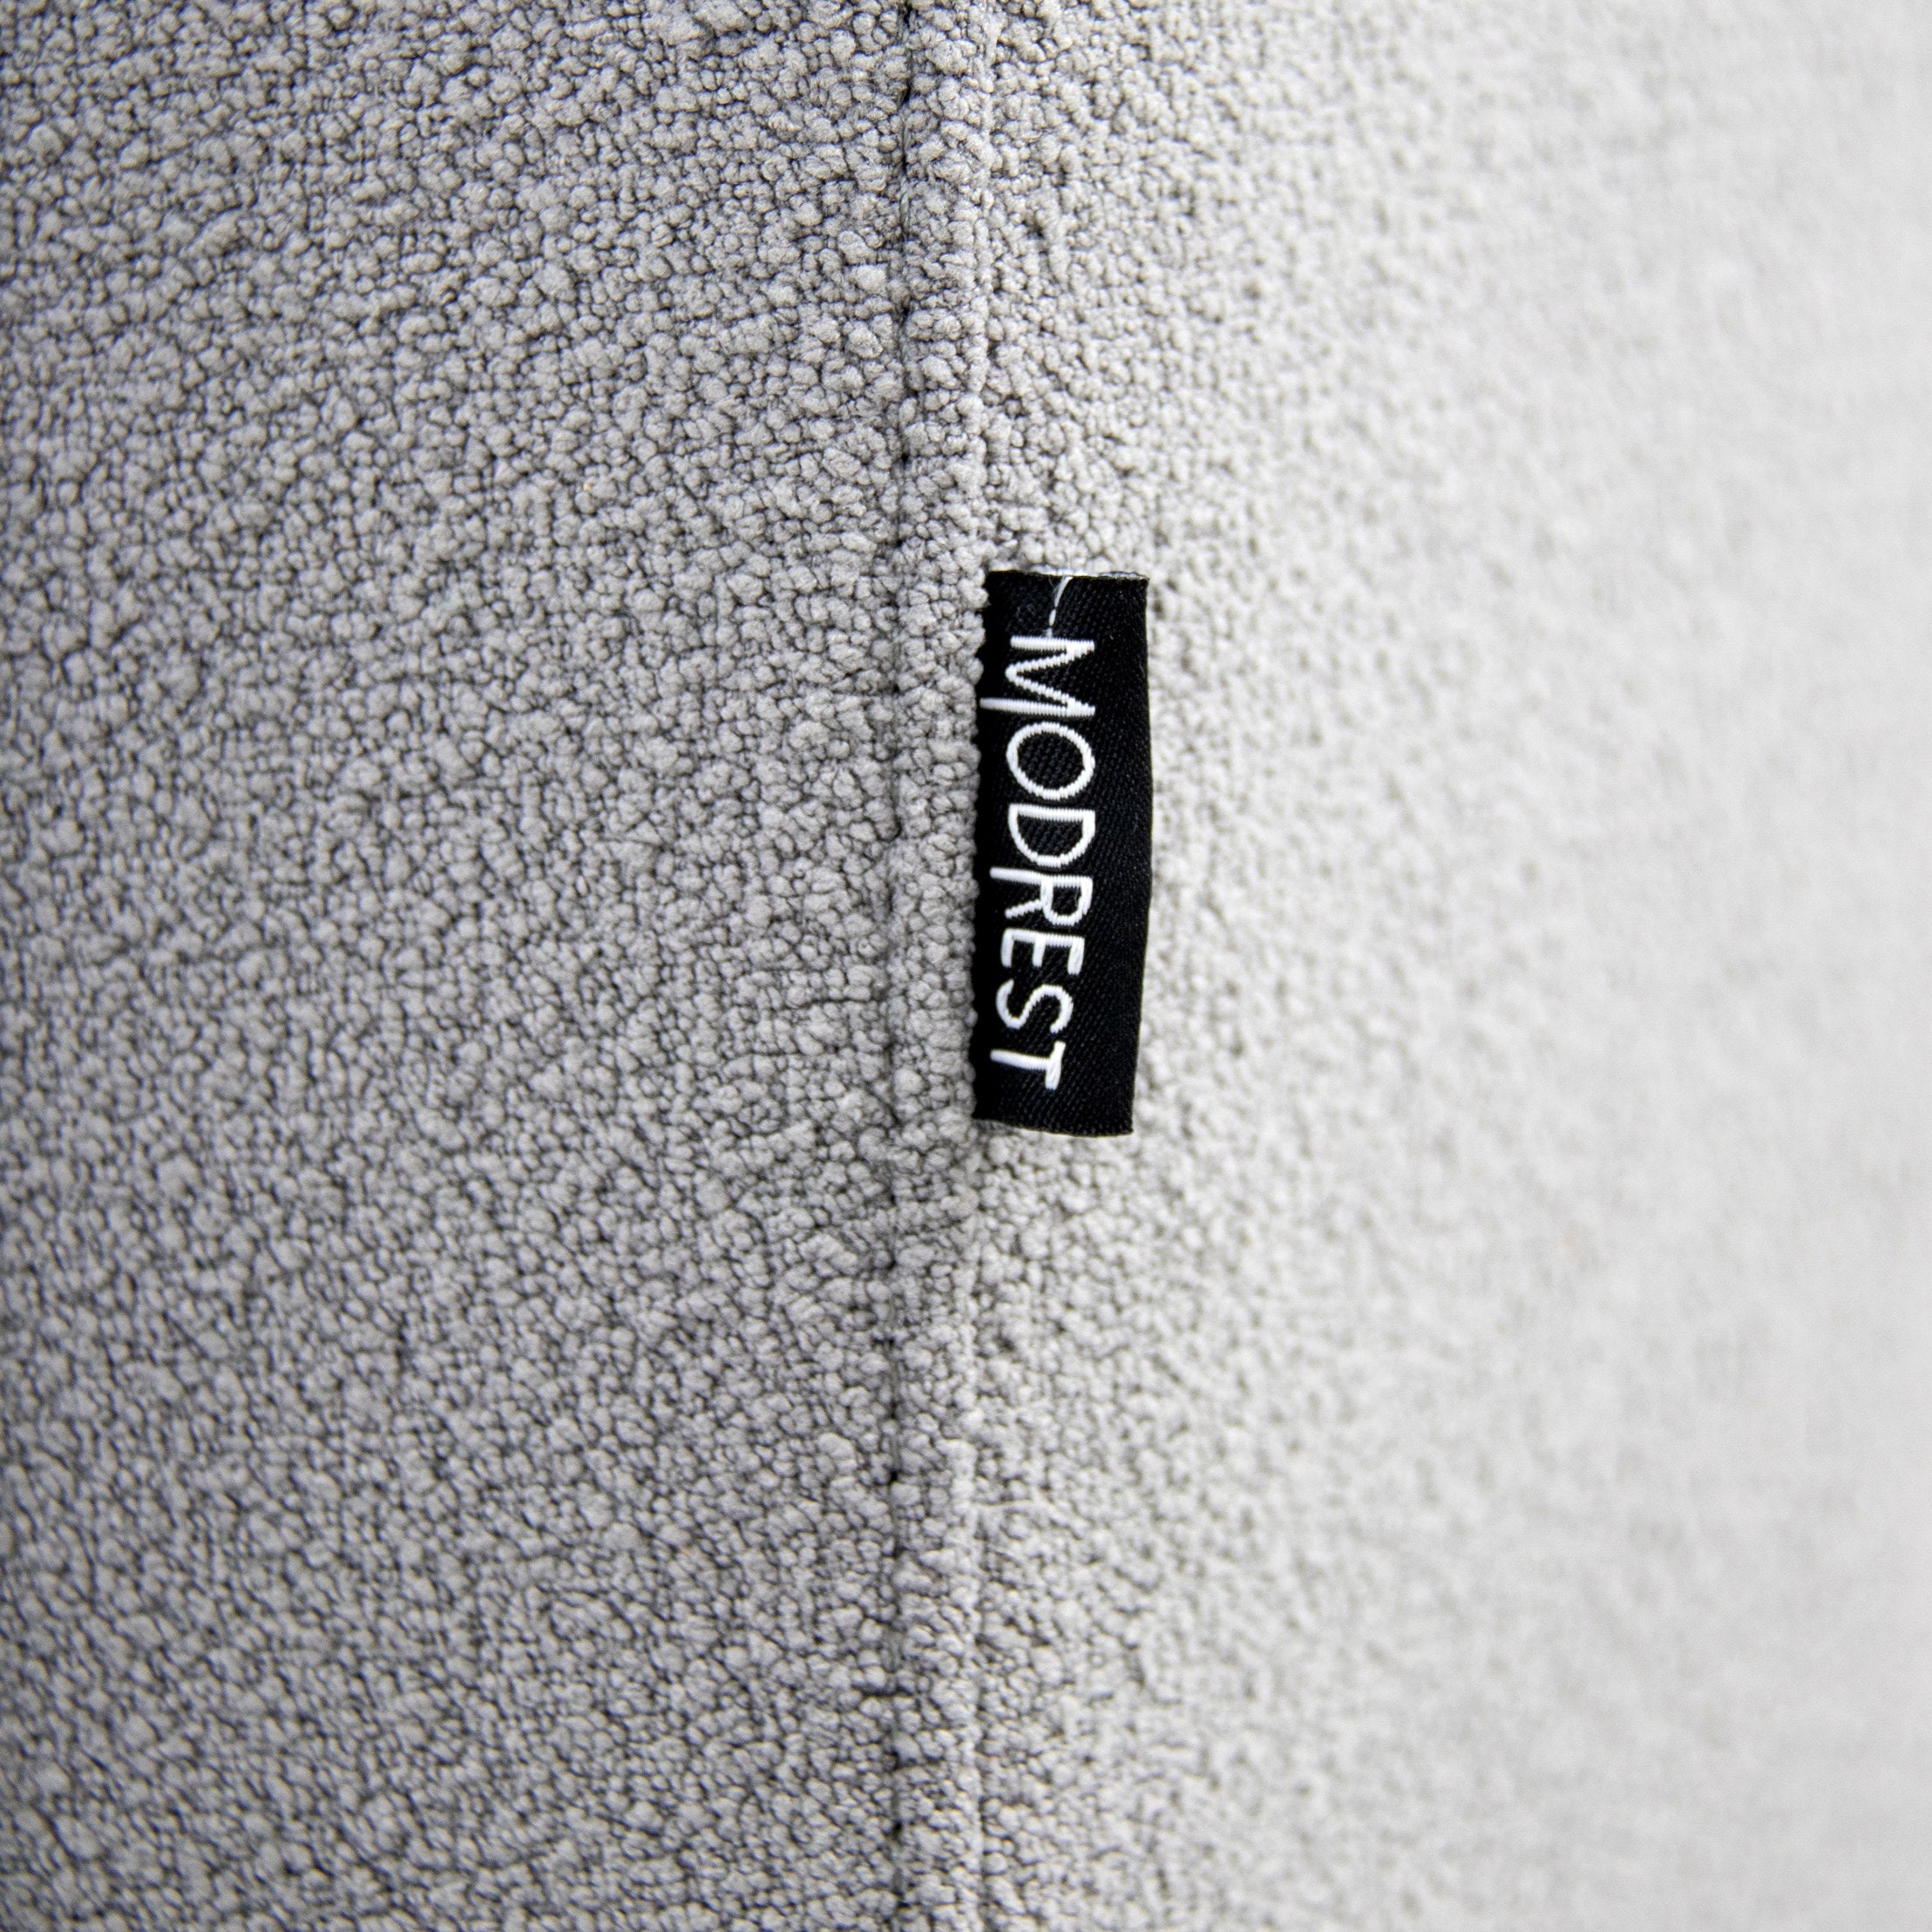 Modrest Byrne - Modern Grey Fabric Bed-Bed-VIG-Wall2Wall Furnishings